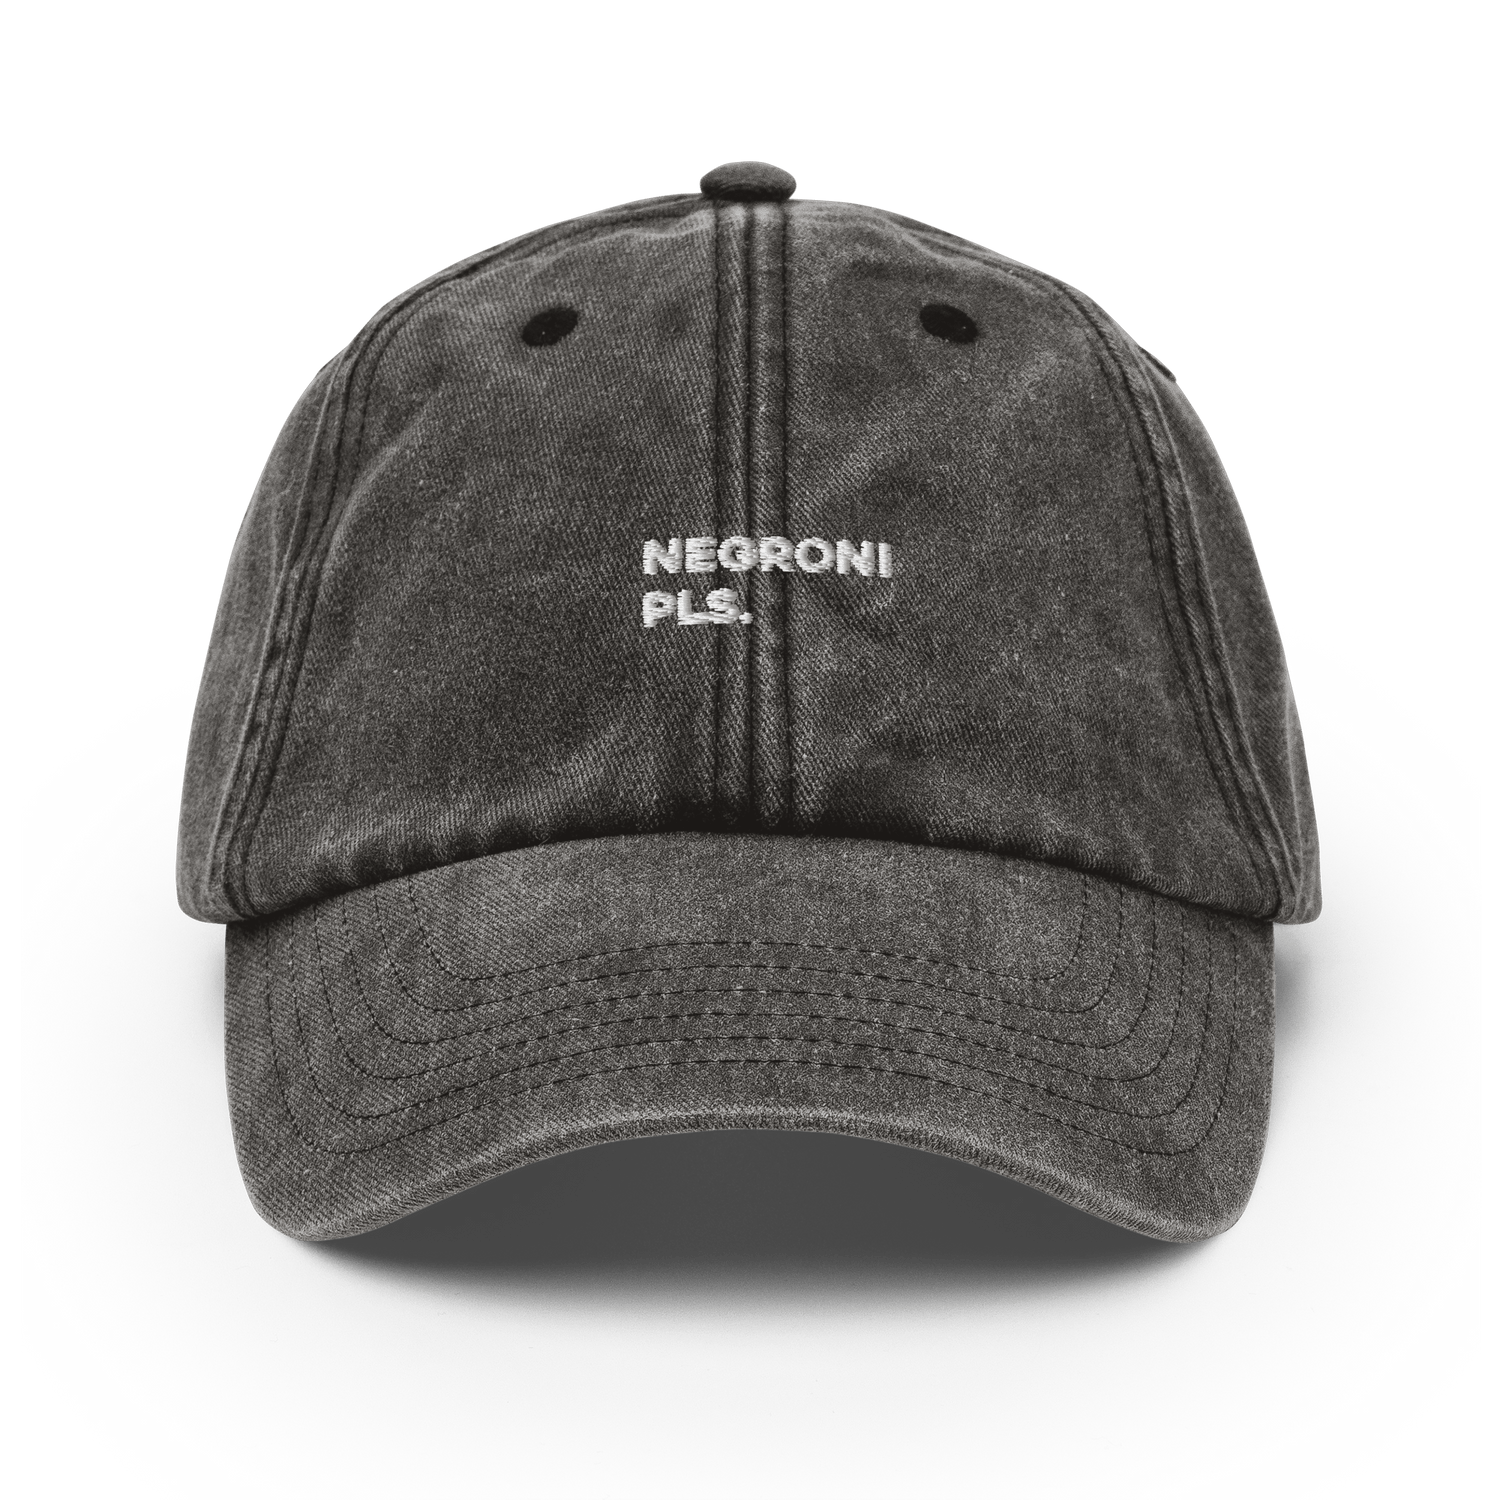 De Negroni Pls. Vintage hoed